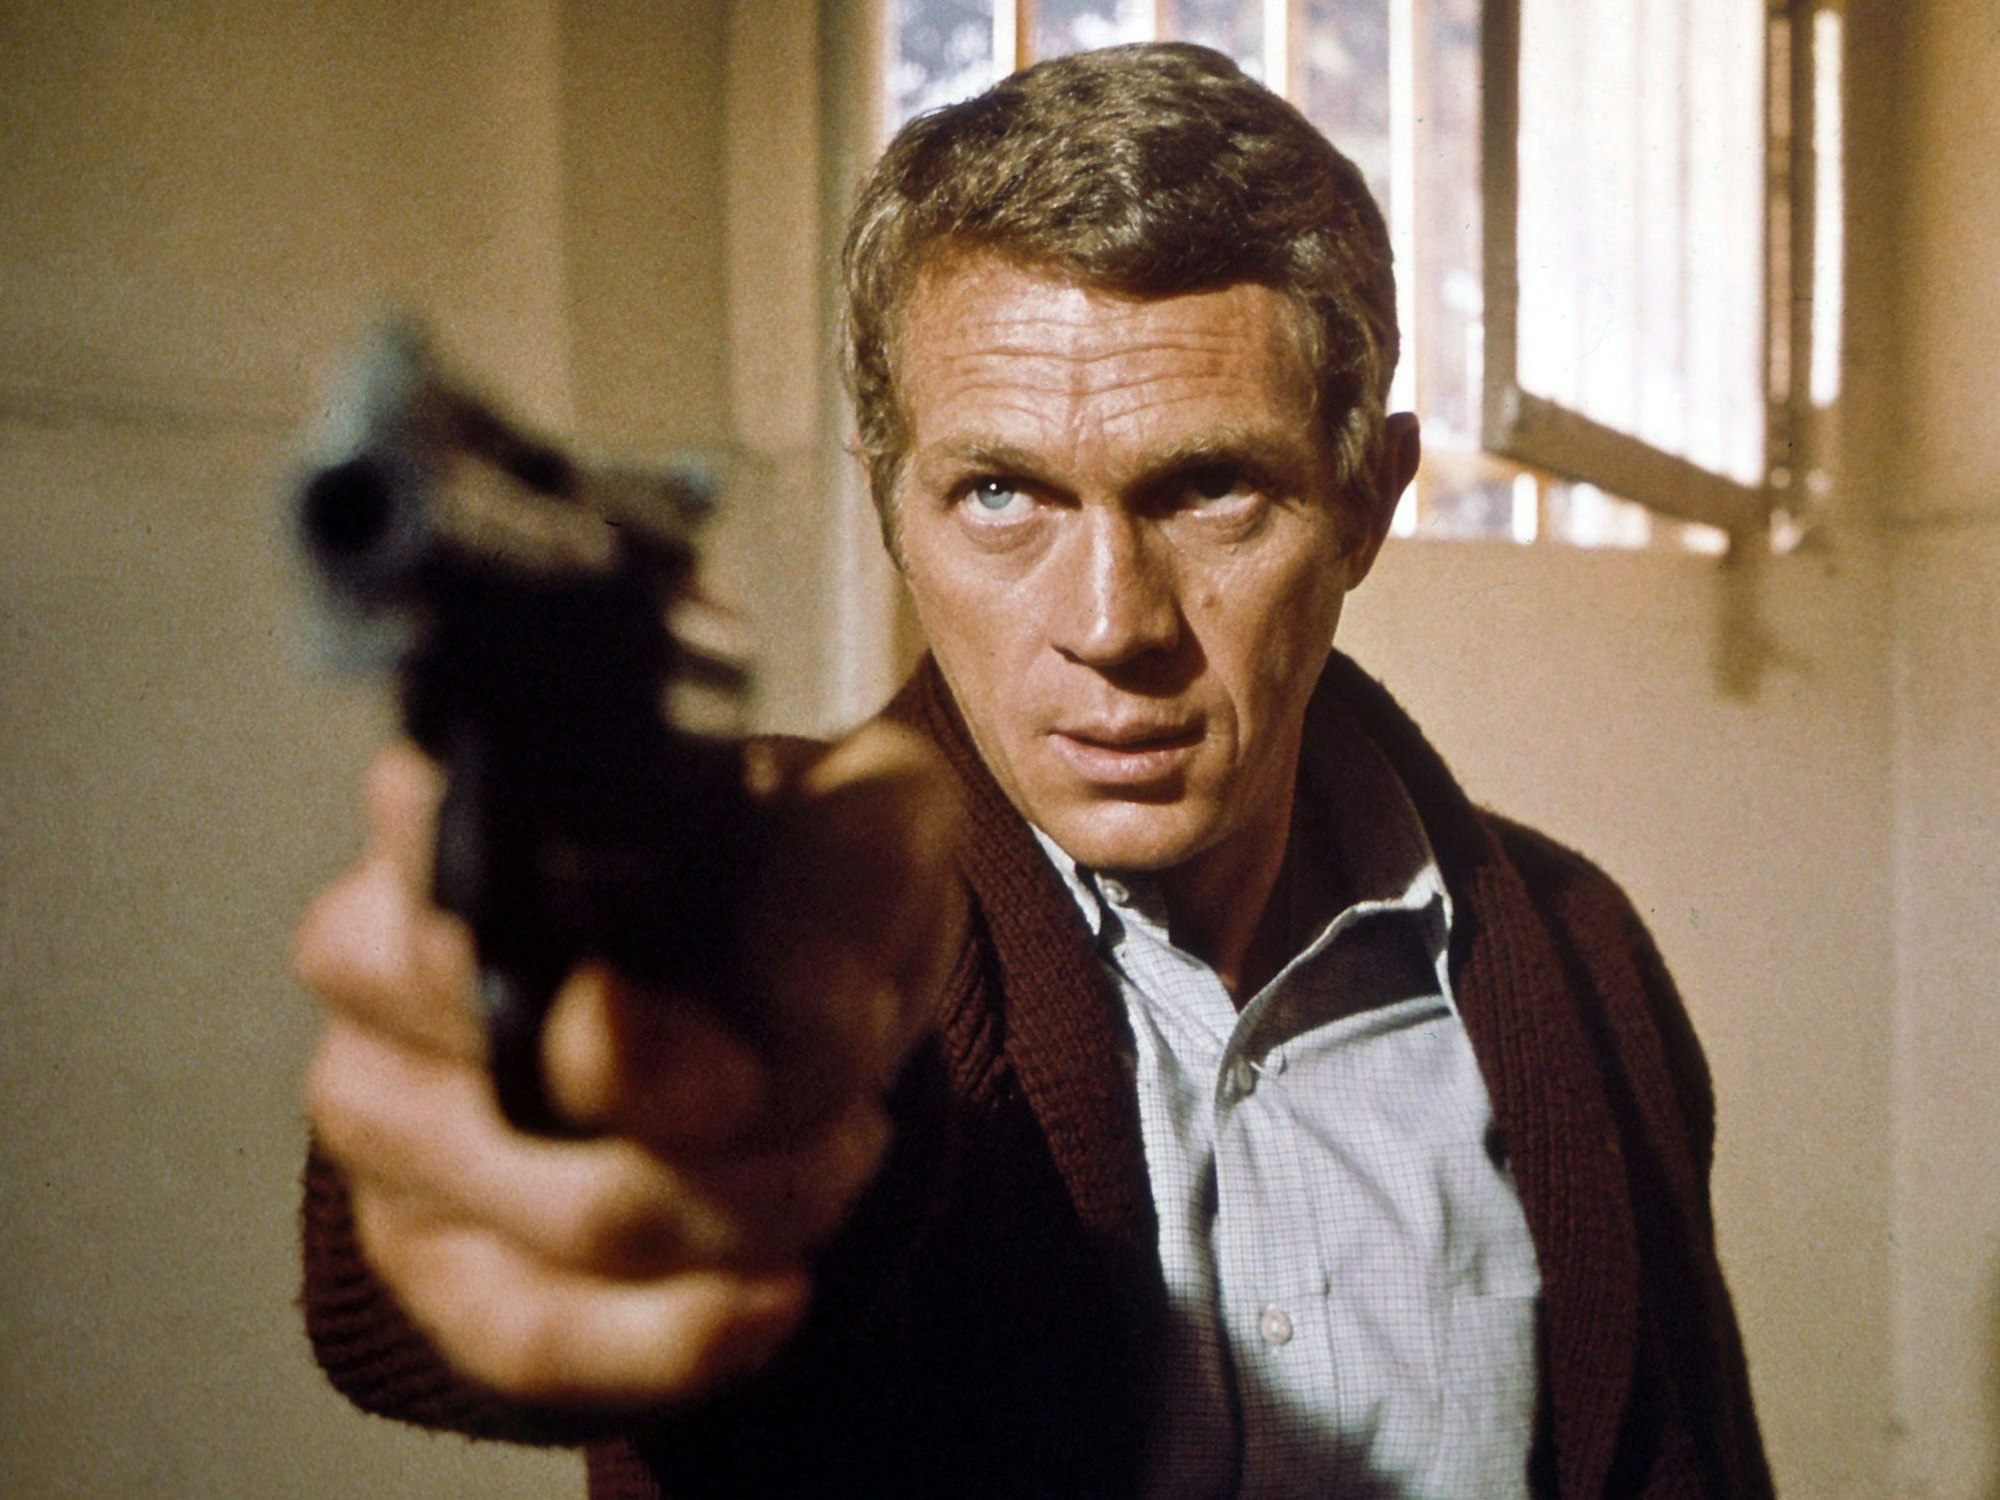 US-Schauspieler Steve McQueen als Polizist "Bullitt" (1968).